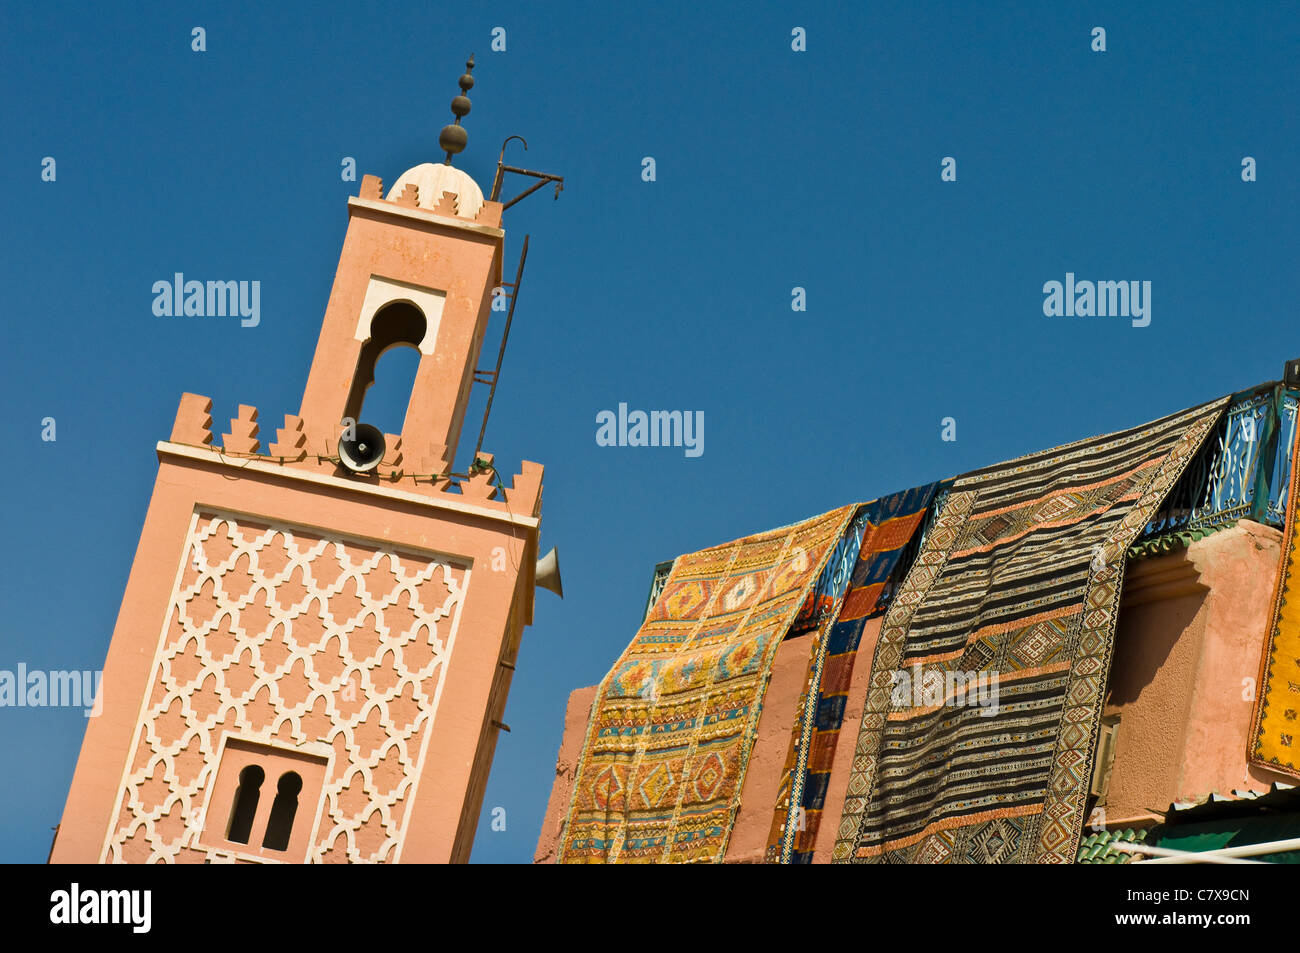 Mosquée et affichage tapis, Marrakech, Maroc Banque D'Images